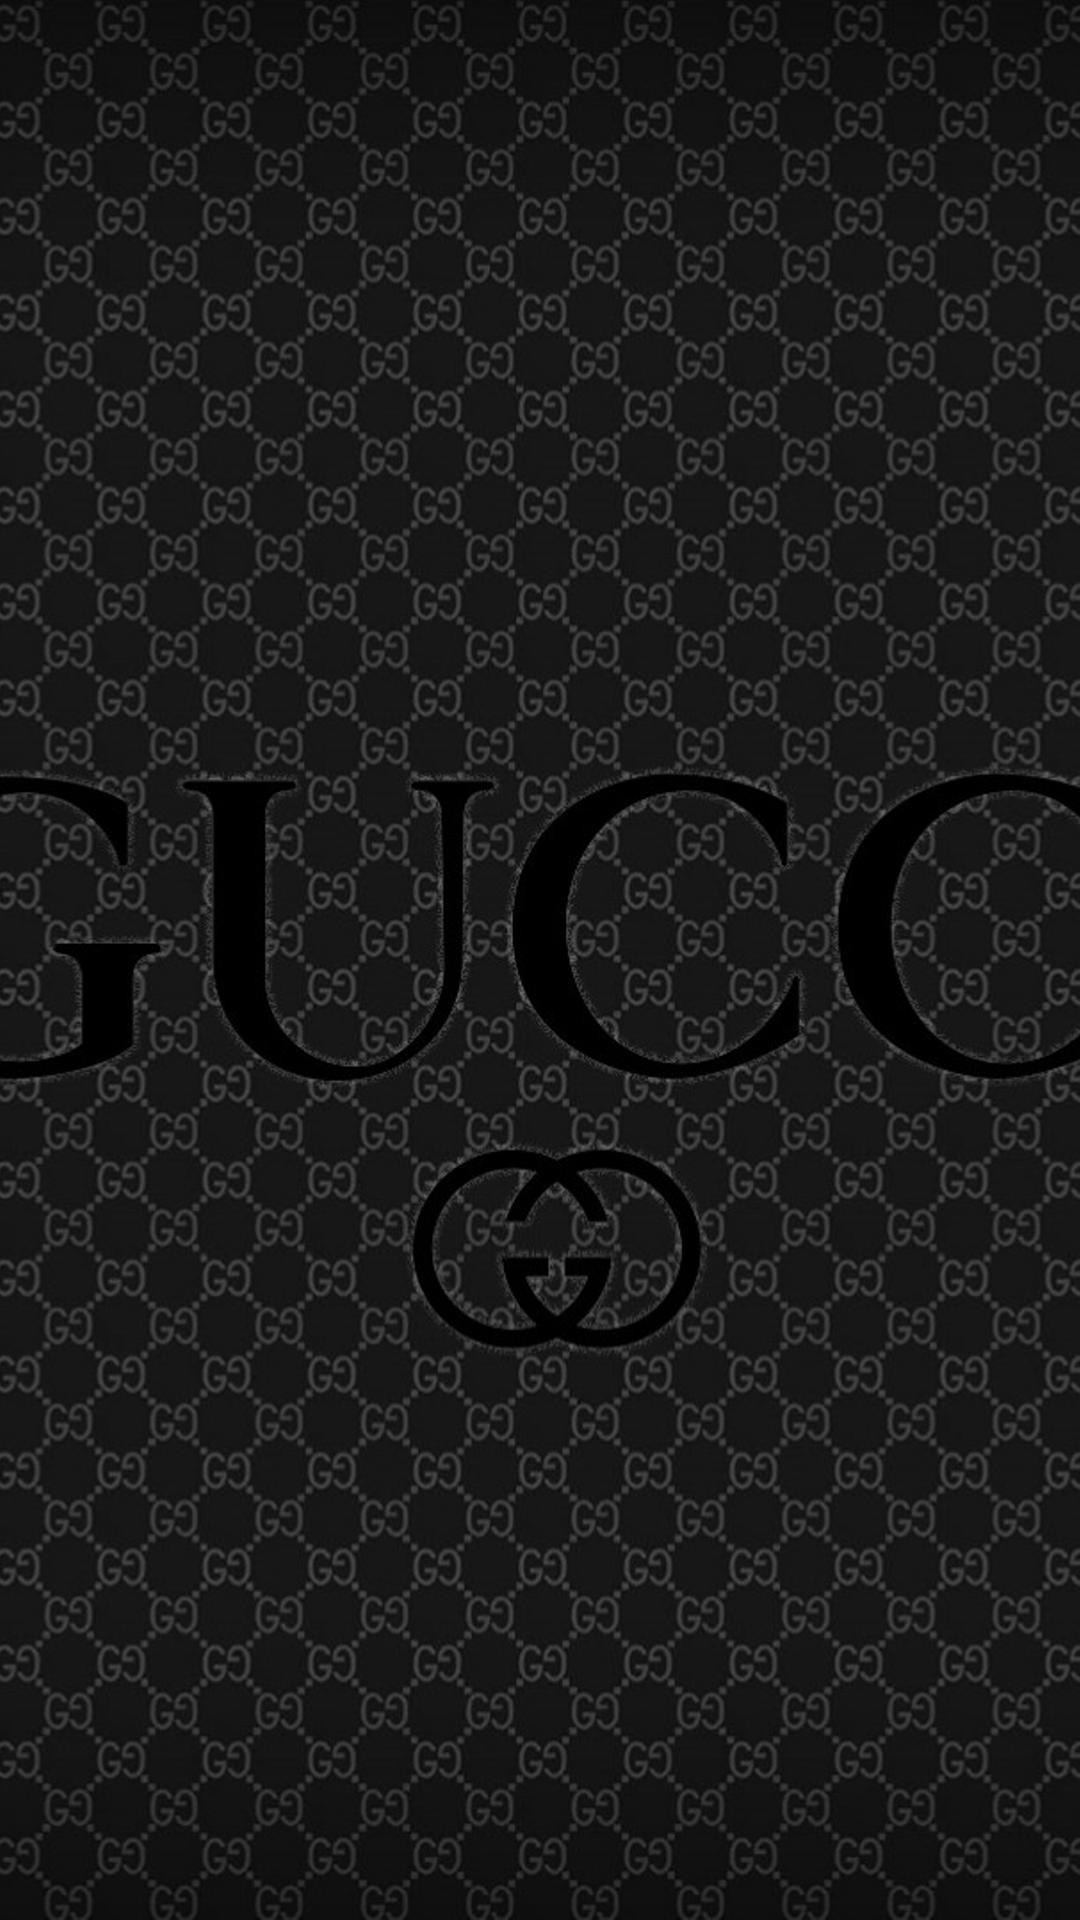 1080 x 1920 · jpeg - Luxury Brand - Gucci wallpaper Wallpaper Download 1080x1920